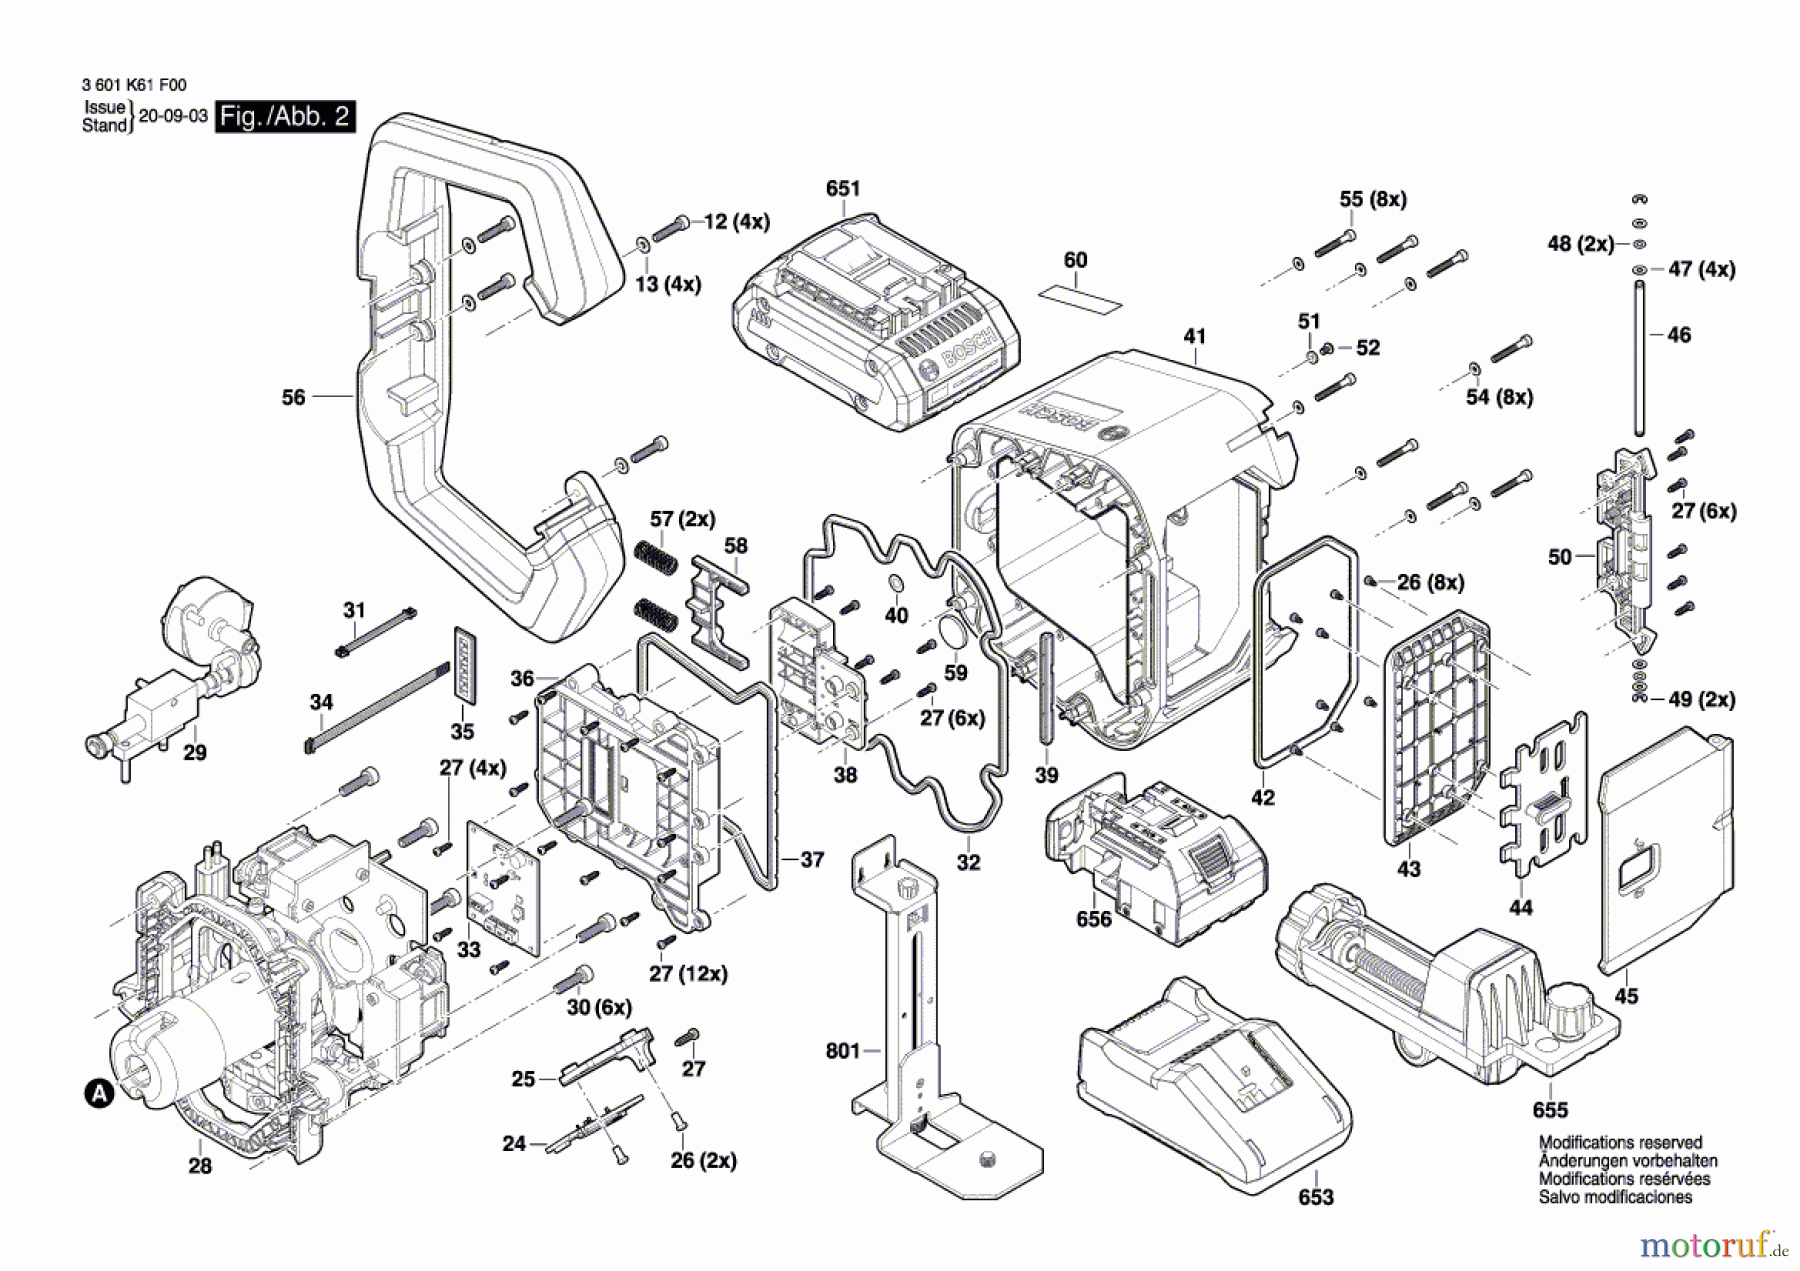  Bosch Werkzeug Baulaser GRL 600 CHV Seite 2